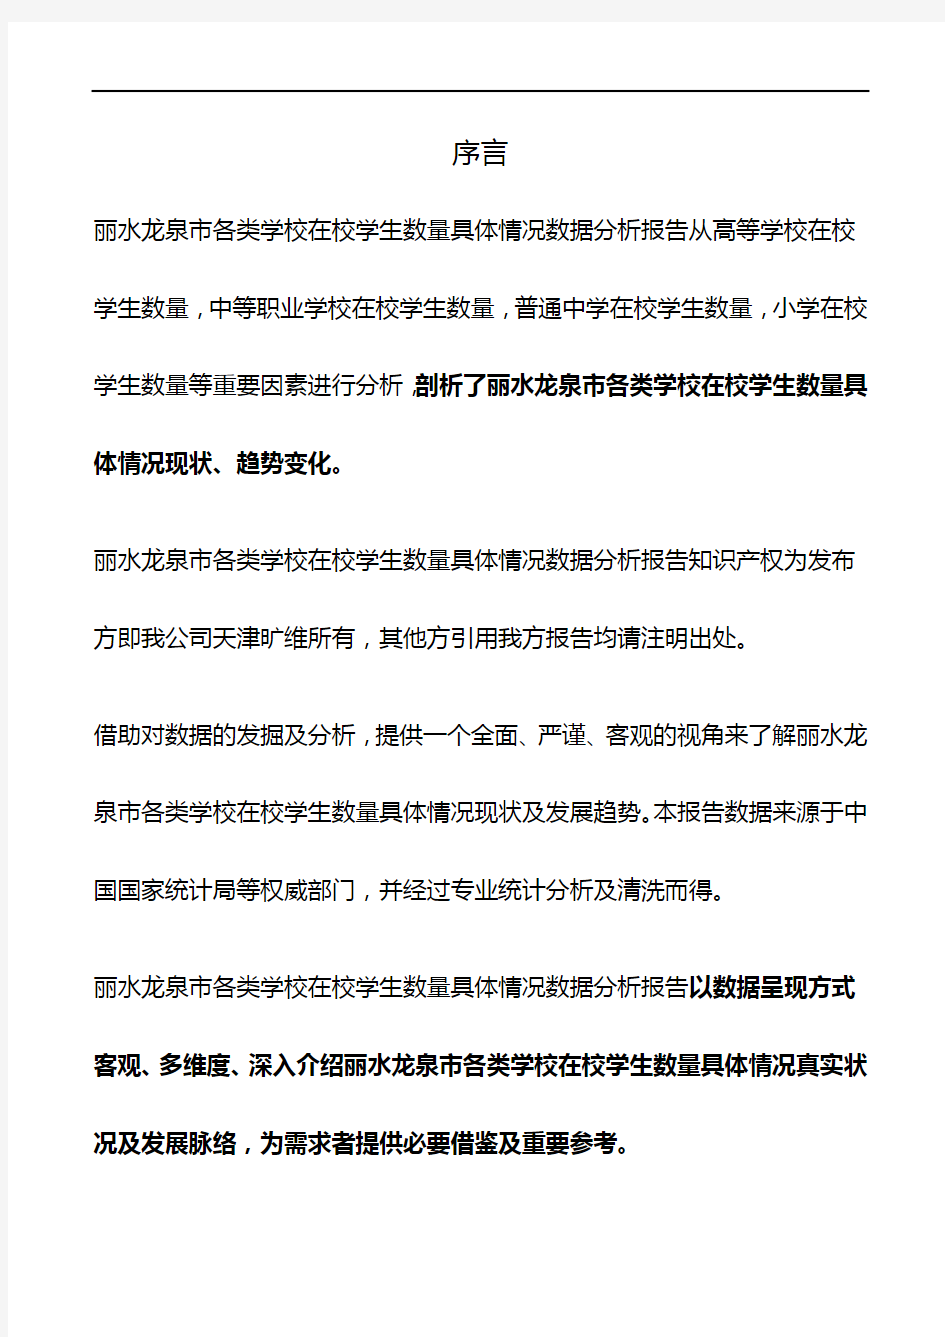 浙江省丽水龙泉市各类学校在校学生数量具体情况3年数据分析报告2019版